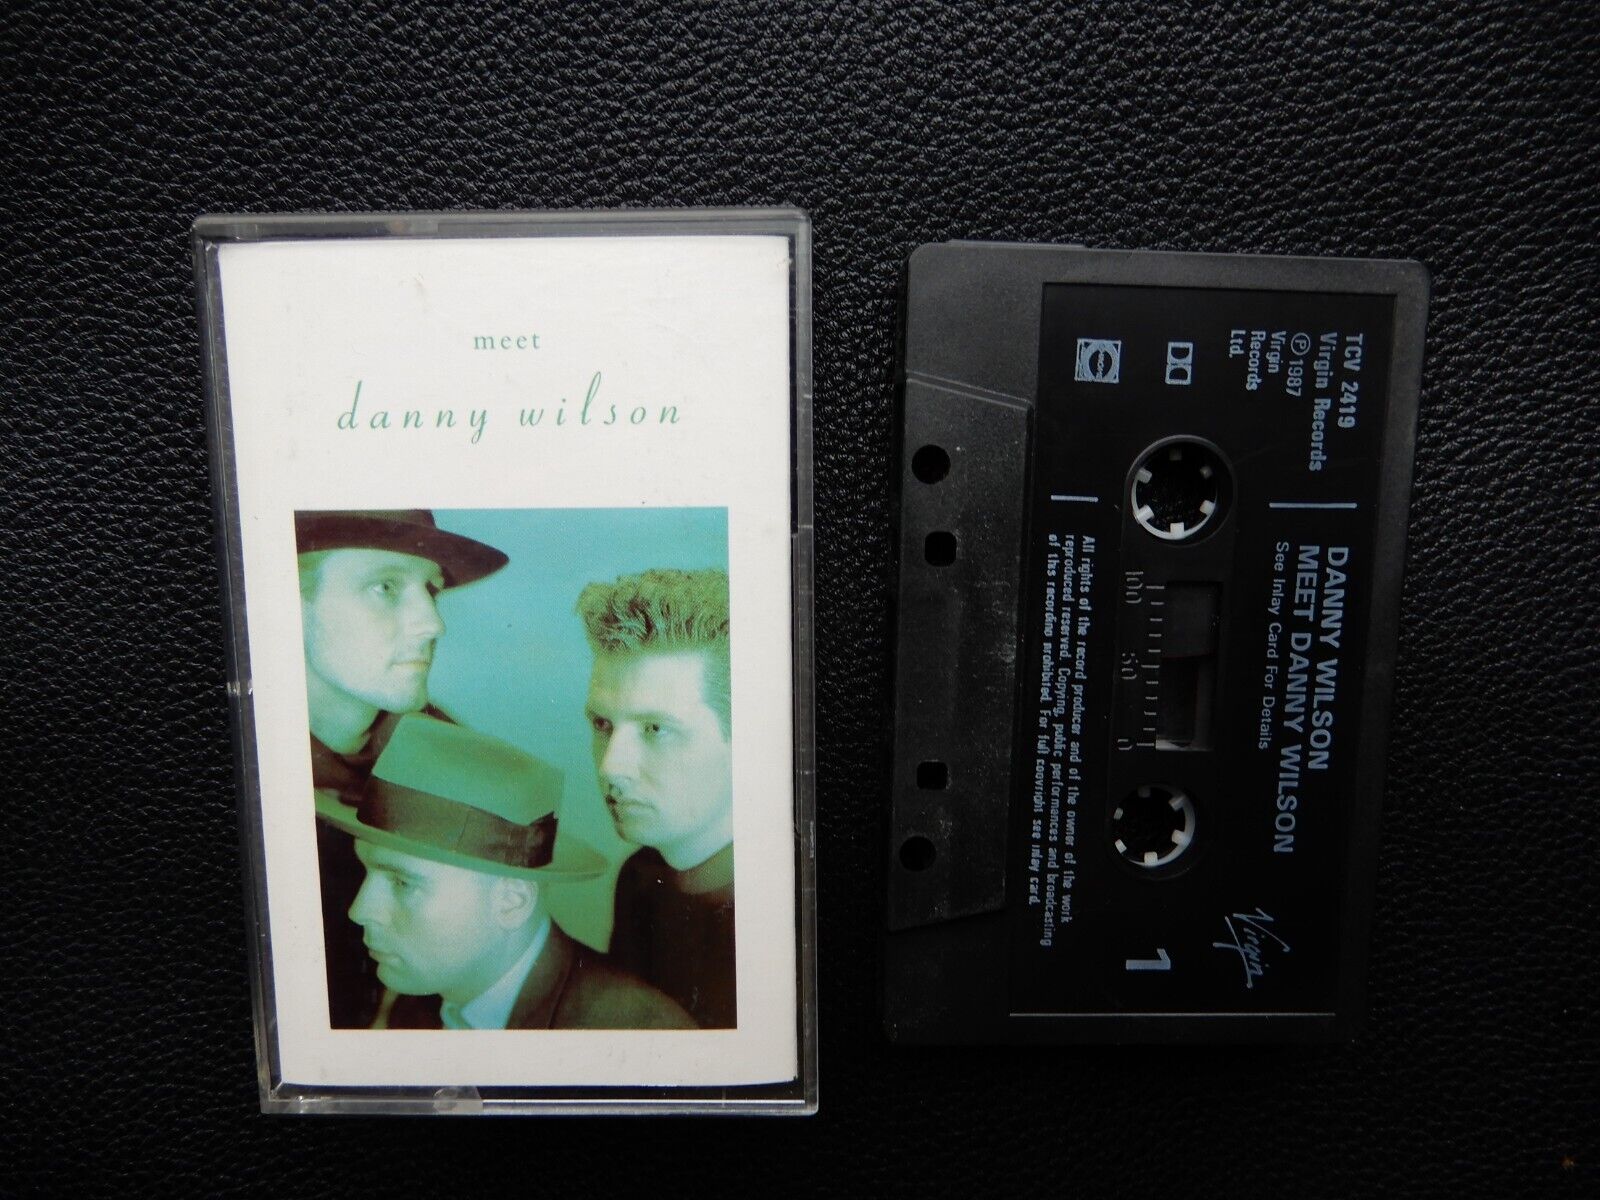 DANNY WILSON - MEET DANNY WILSON - 1987 CASSETTE TAPE ALBUM (MARYS PRAYER)